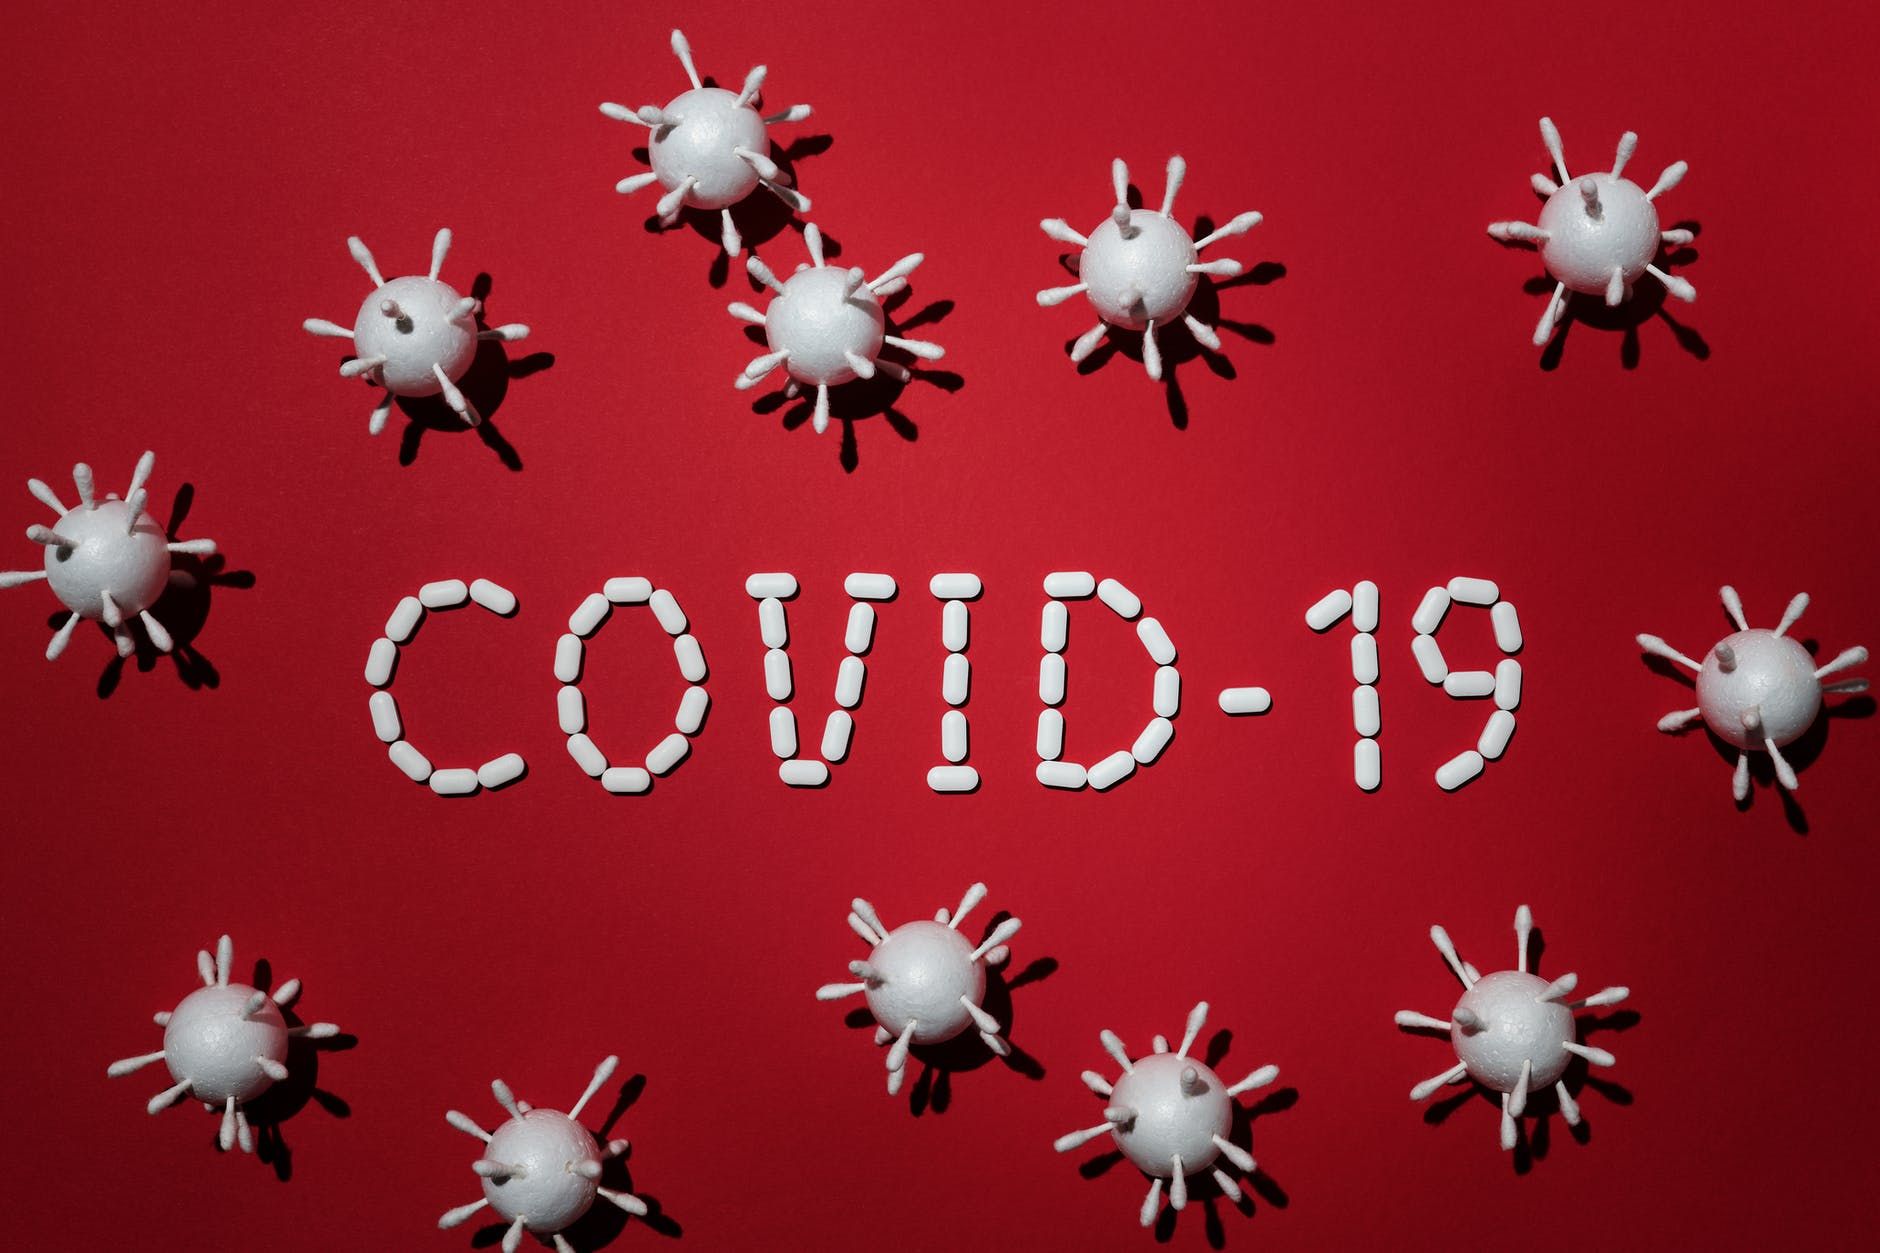 Covid-19: Antara Bunuh Diri dan Membunuh 